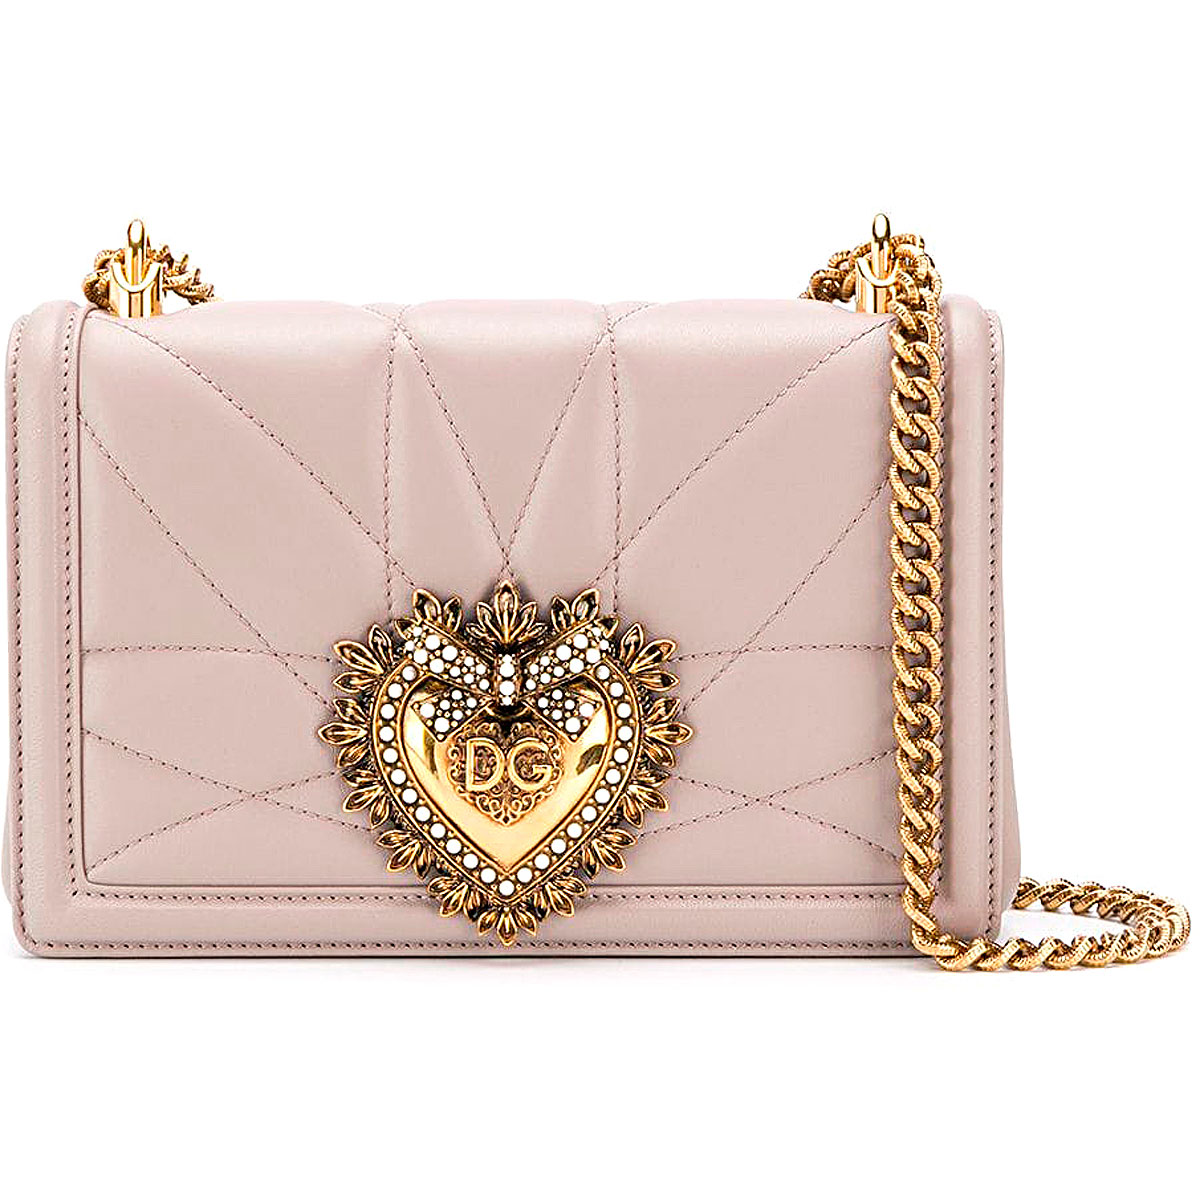 Handbags Dolce & Gabbana, Style code: bb6652-av967-8h062